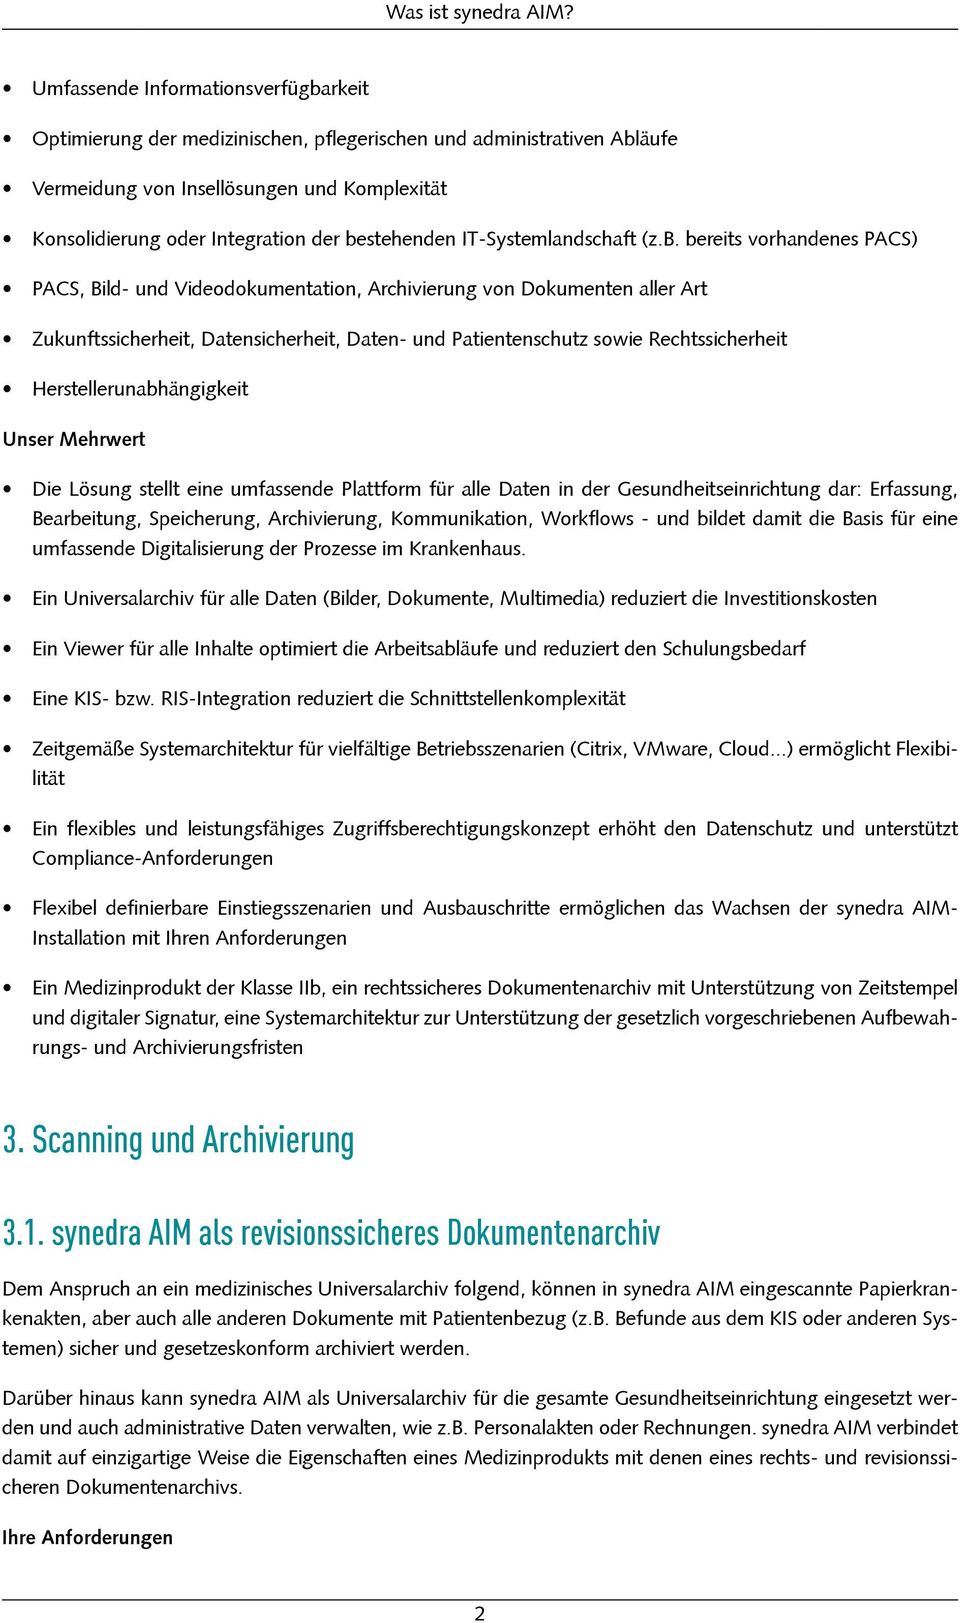 KonsolidierungoderIntegrationderbestehendenIT-Systemlandschaft(z.B.